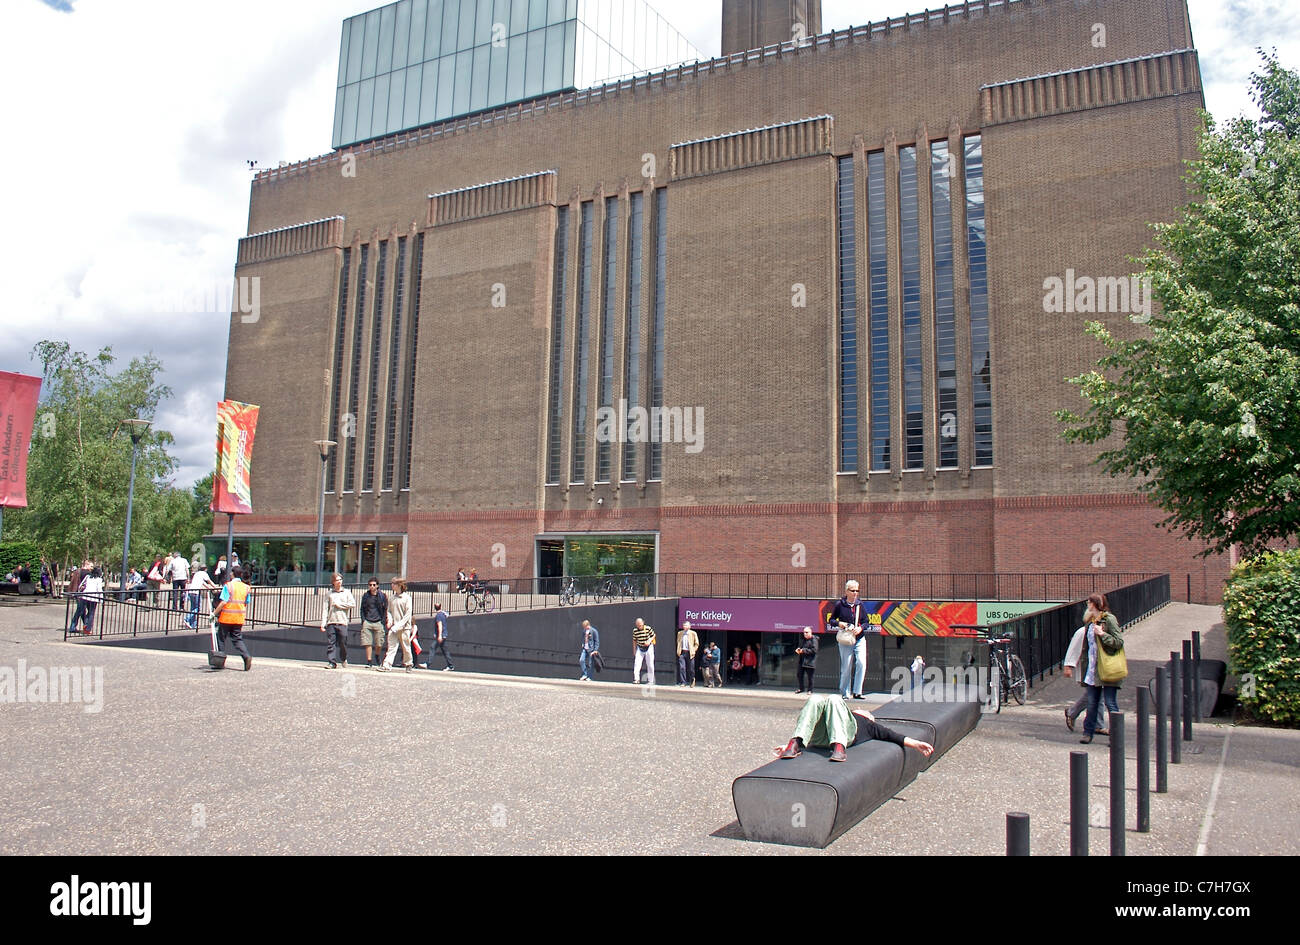 Vue de la Turbine hall entrée de la Tate Modern museum à Bankside, Londres, Angleterre Banque D'Images